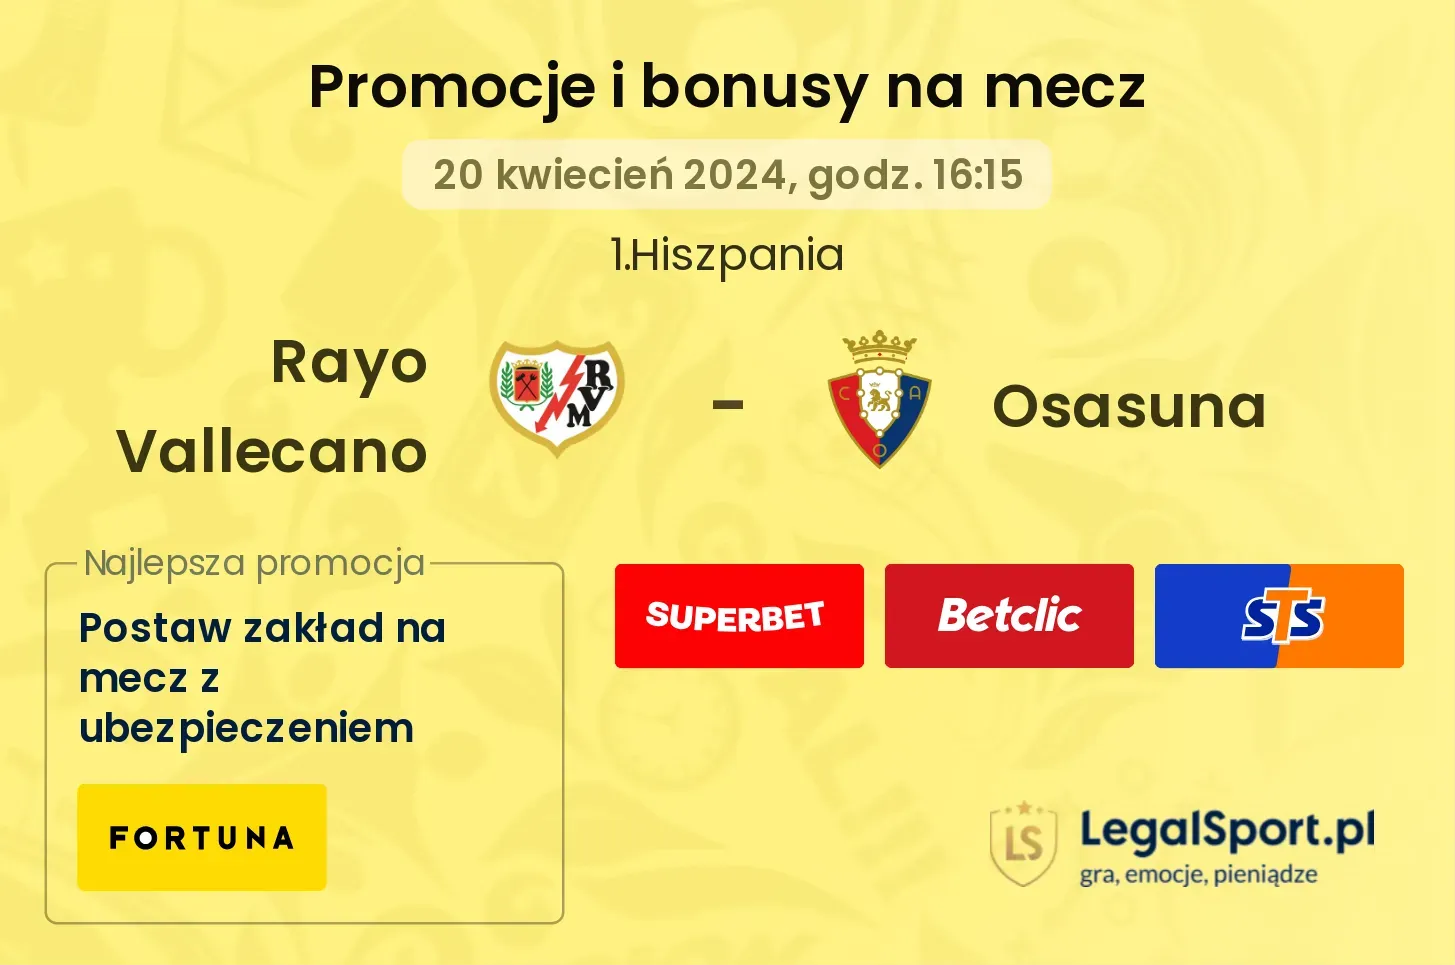 Rayo Vallecano - Osasuna promocje bonusy na mecz